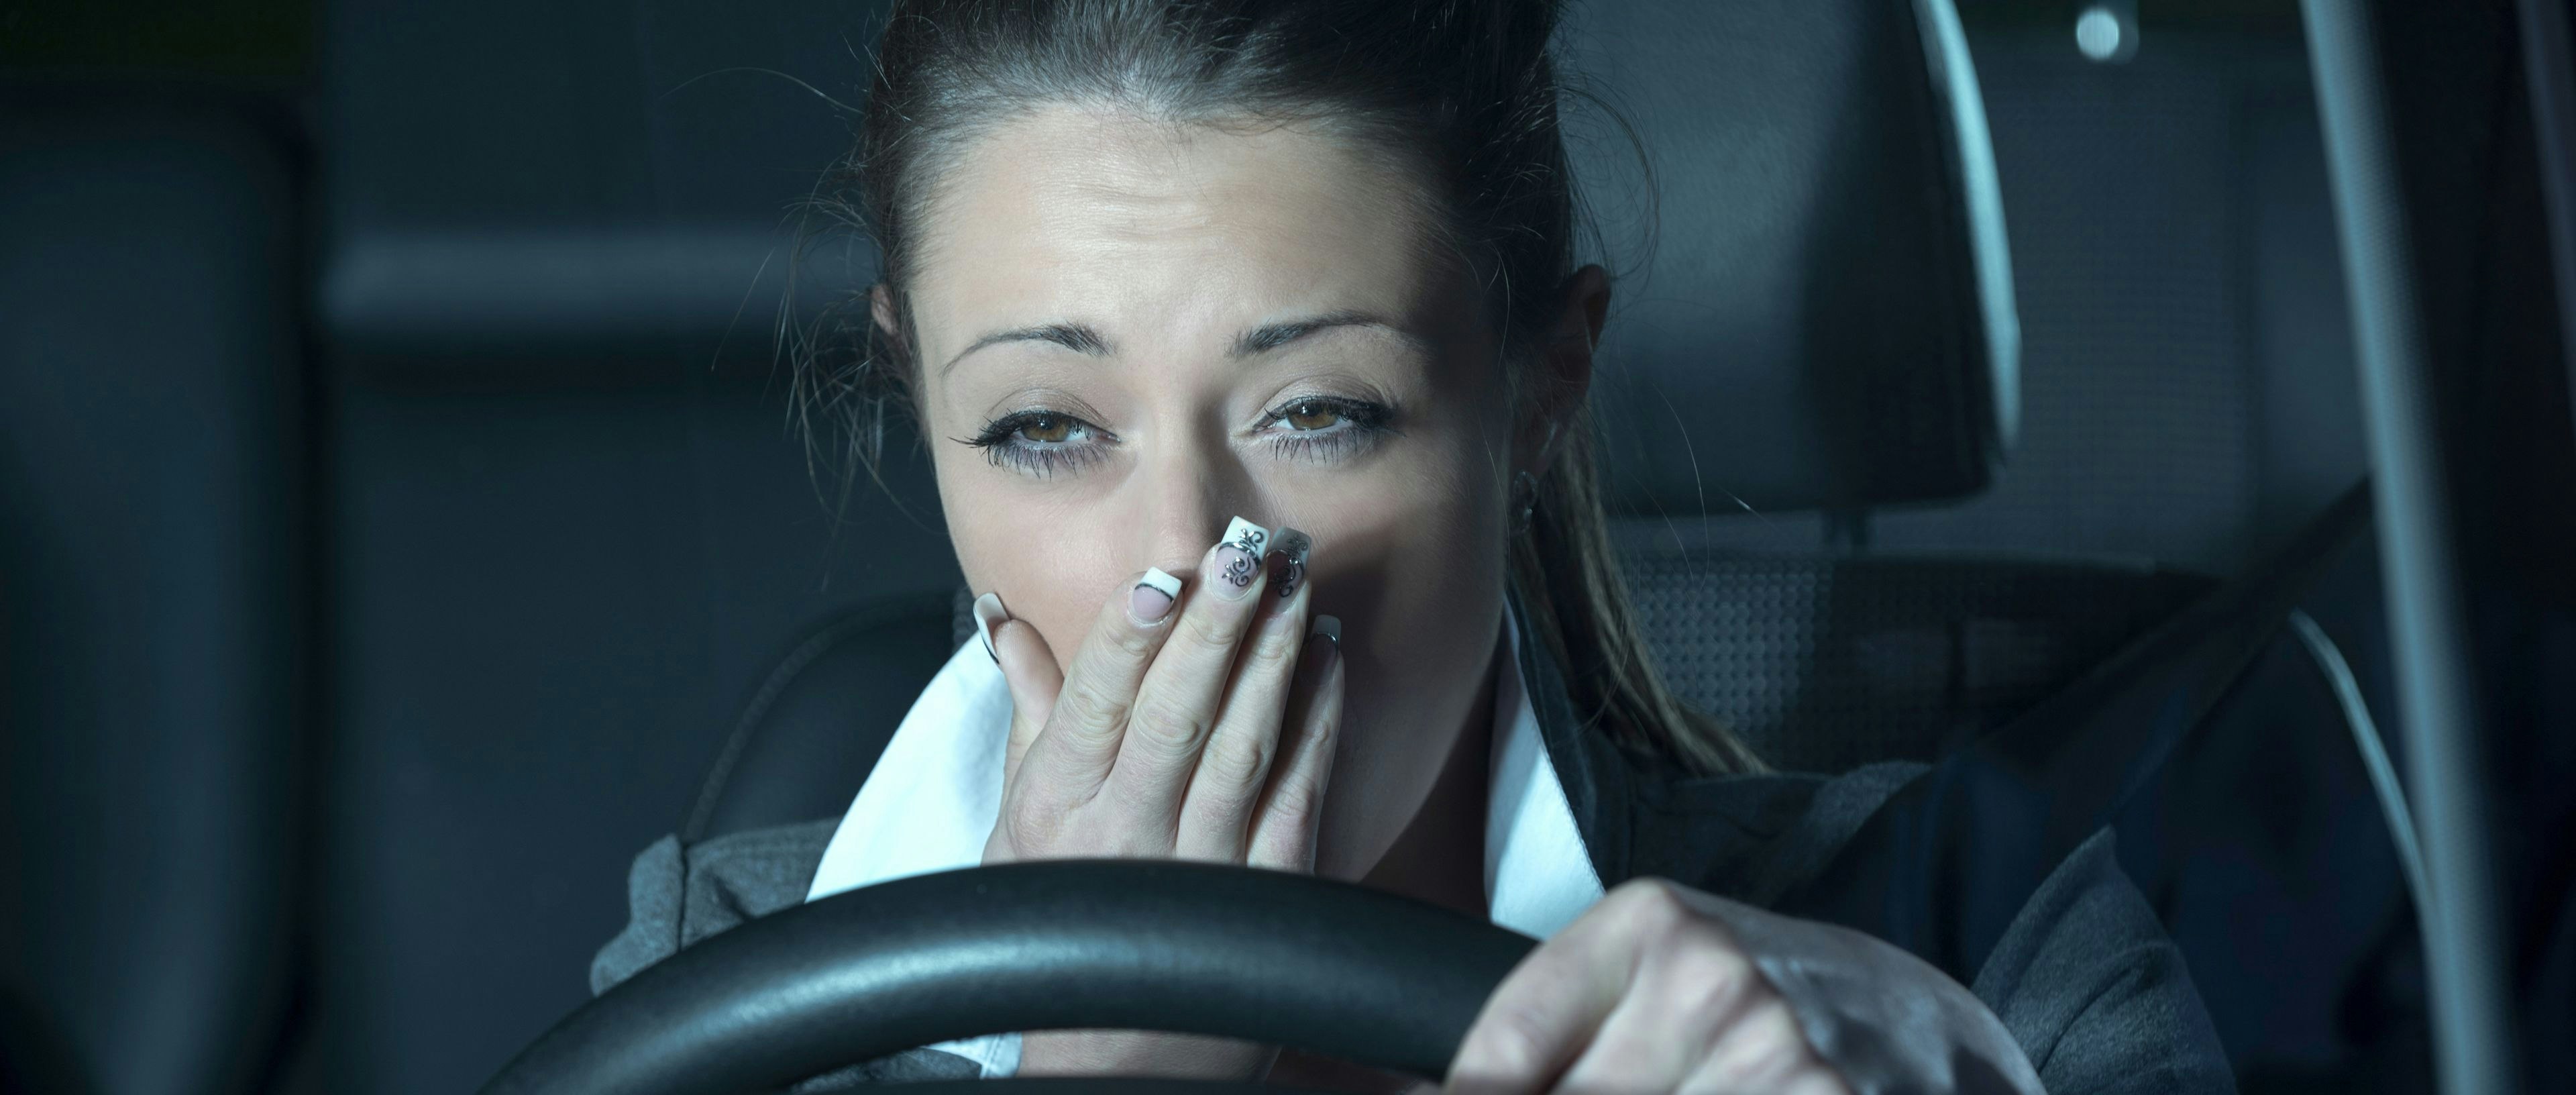 10 symptômes de fatigue à reconnaître avant de prendre le volant